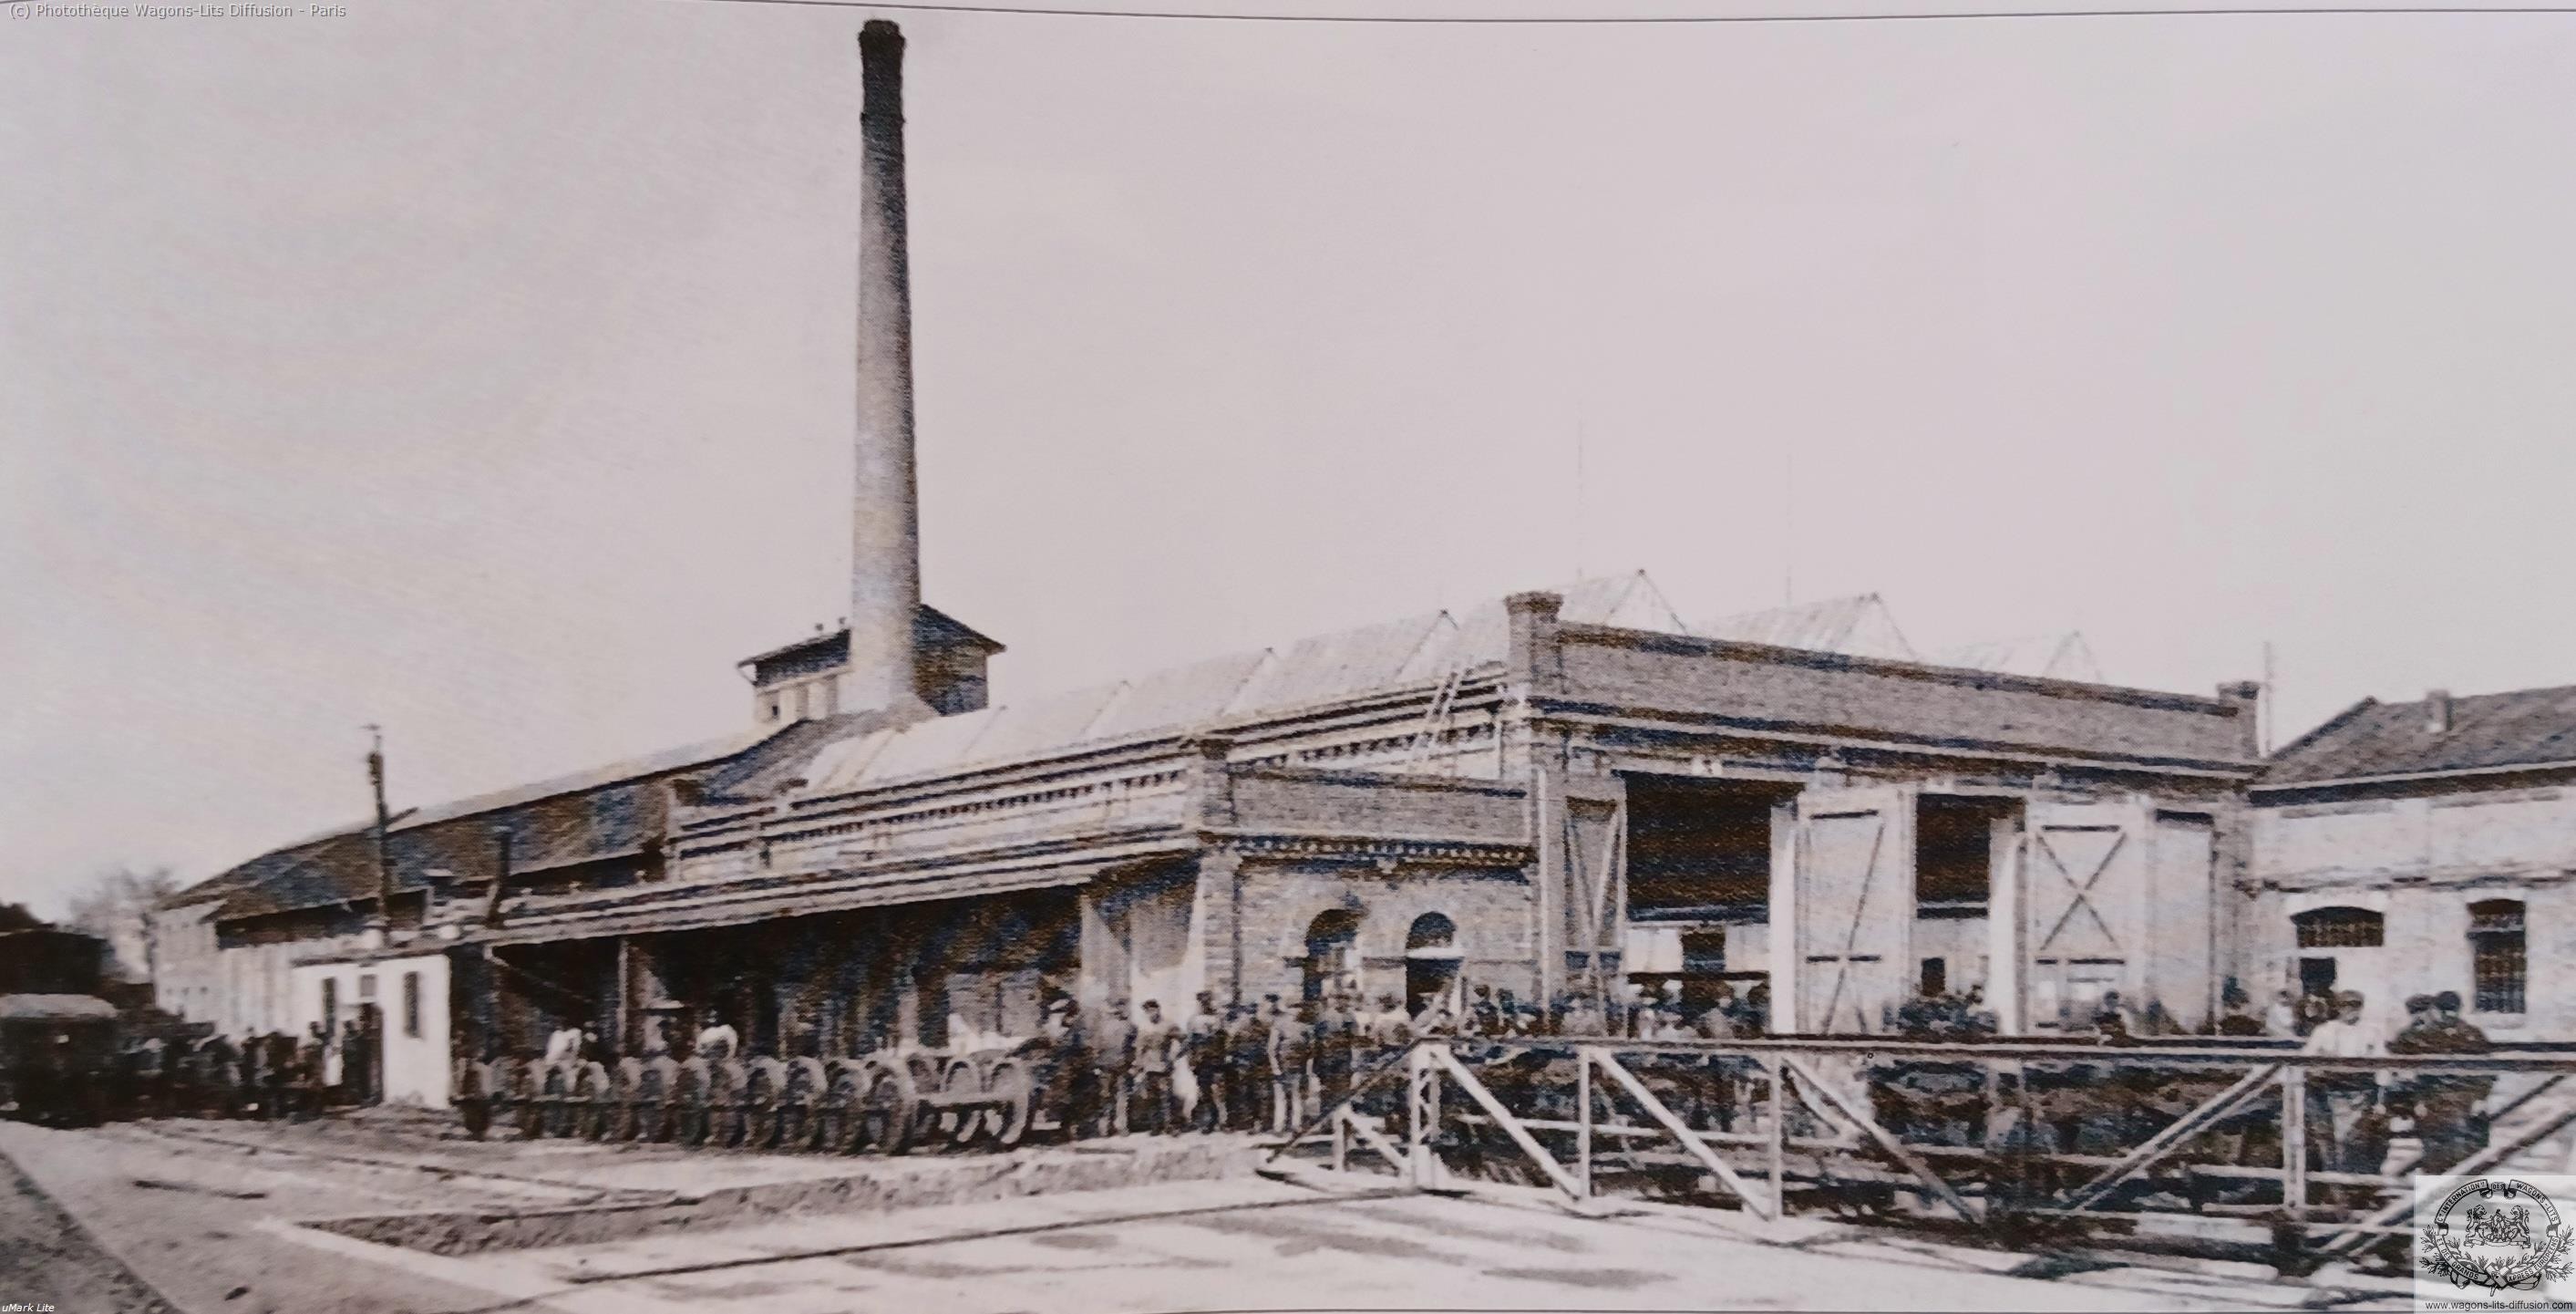 Wl ateliers vienne autriche 1910